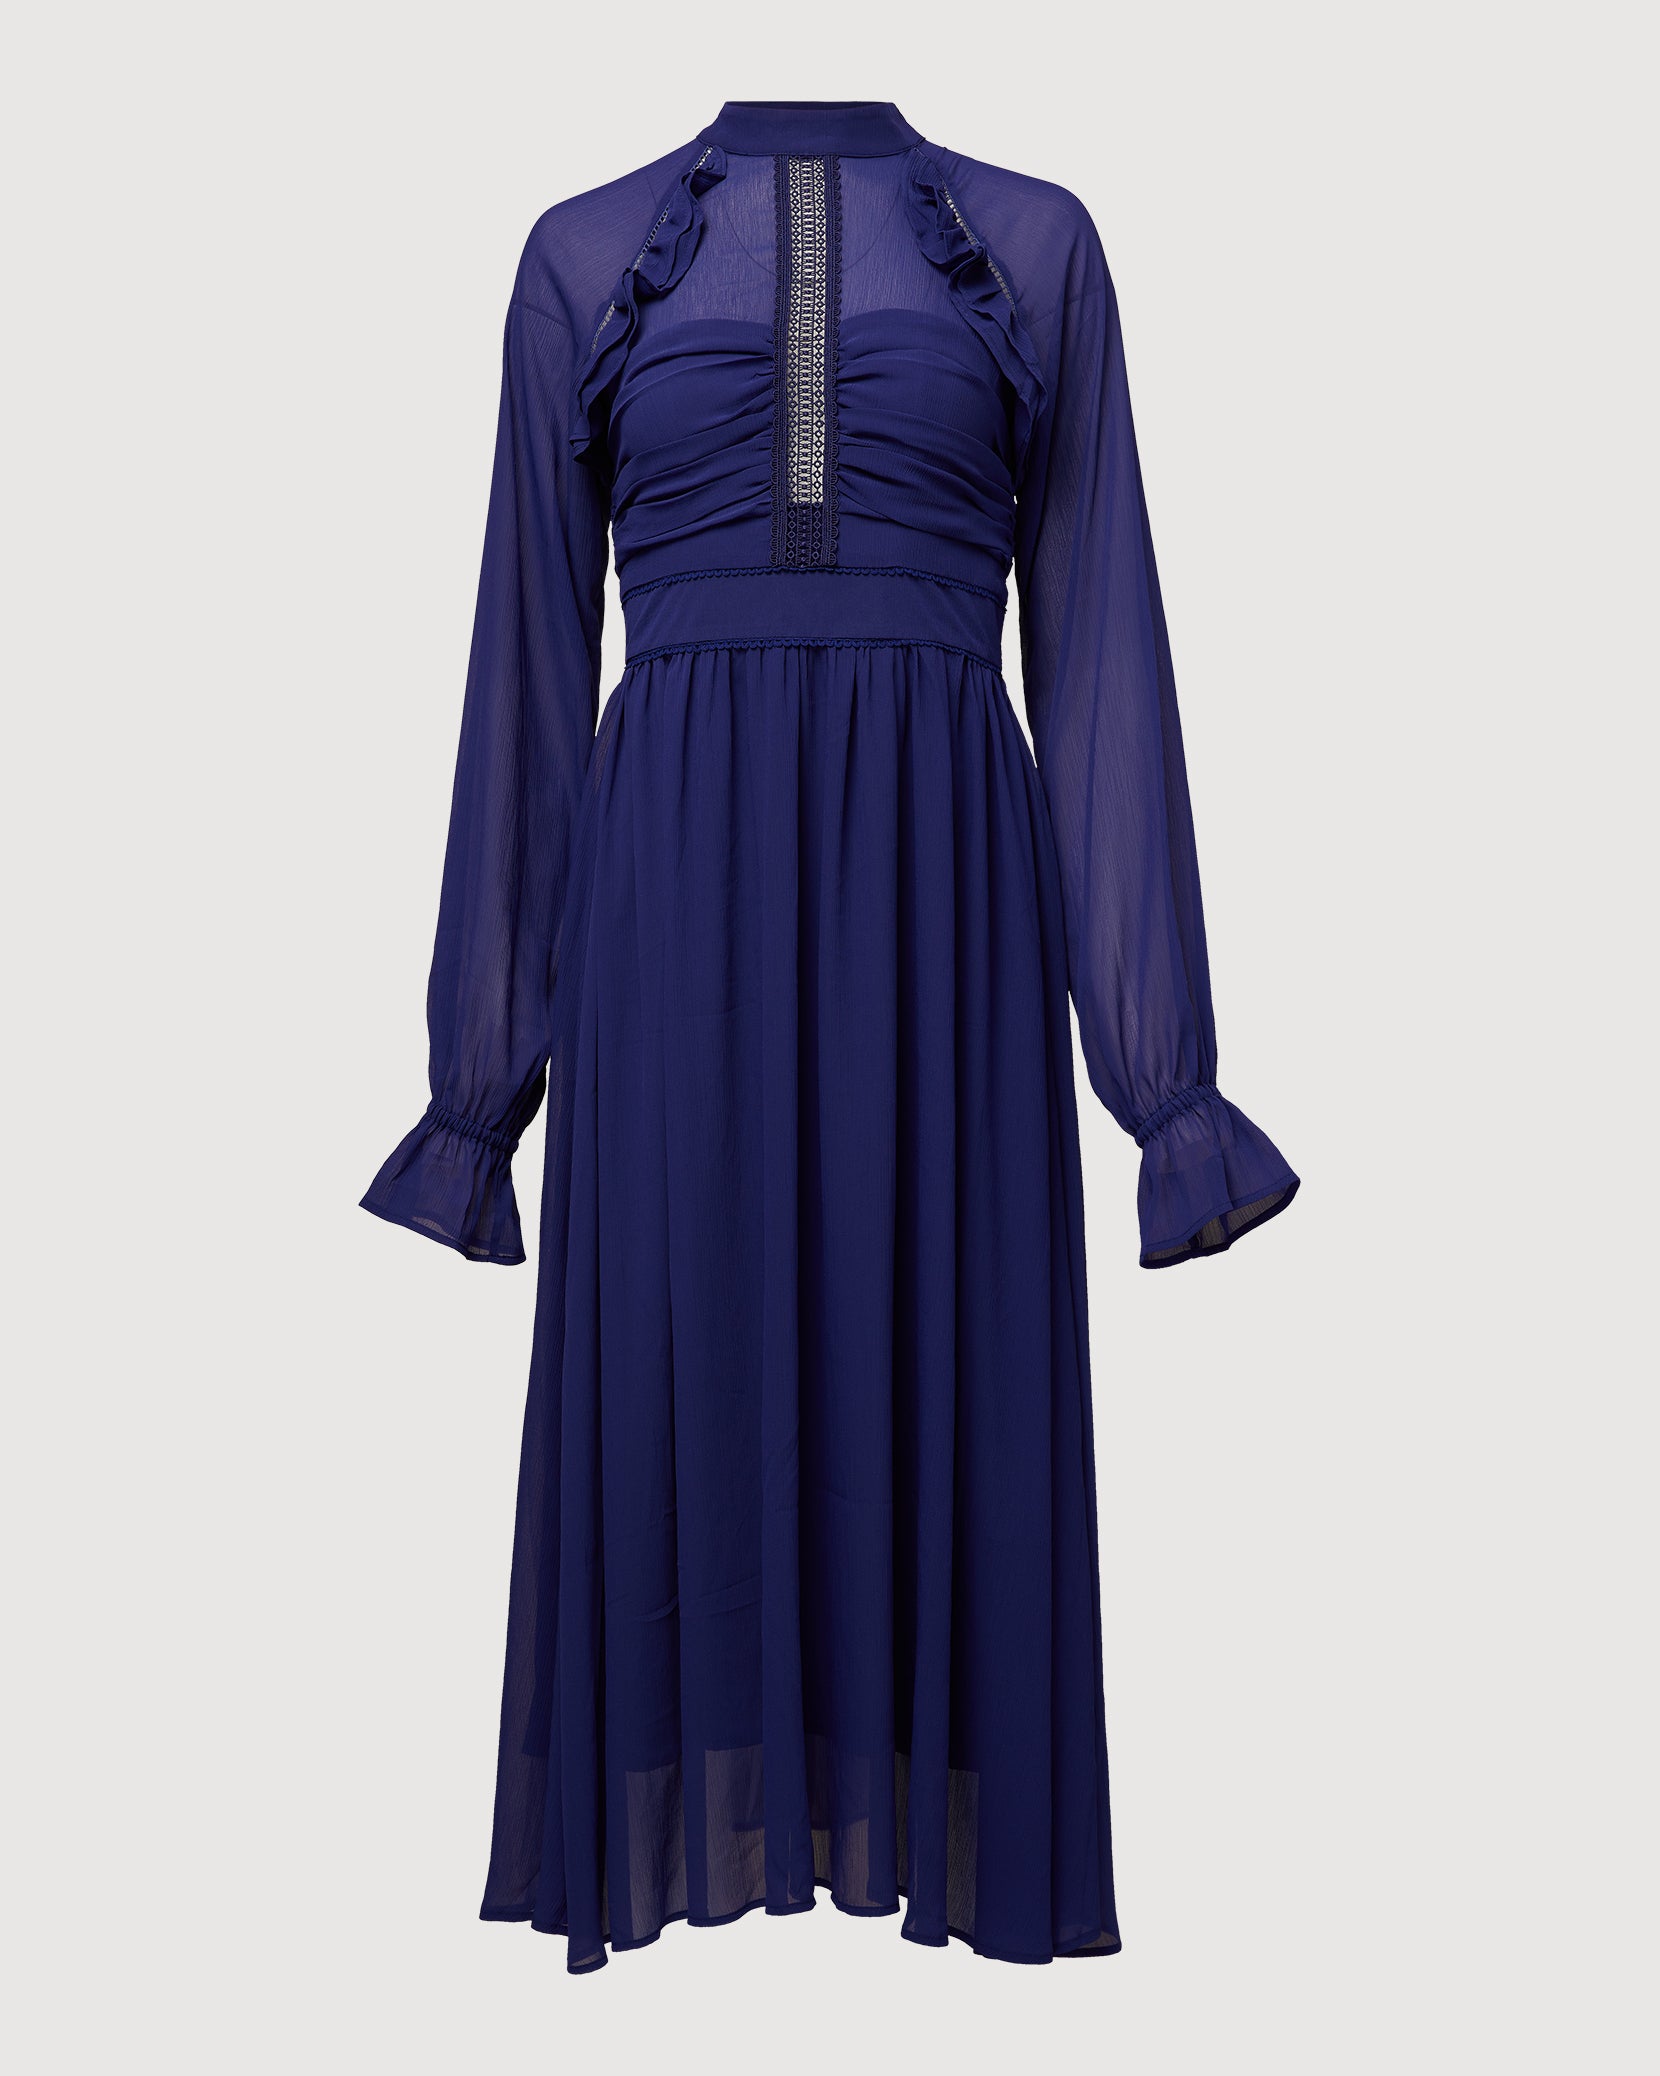 Floral Midi Dress – Rachel Parcell, Inc.